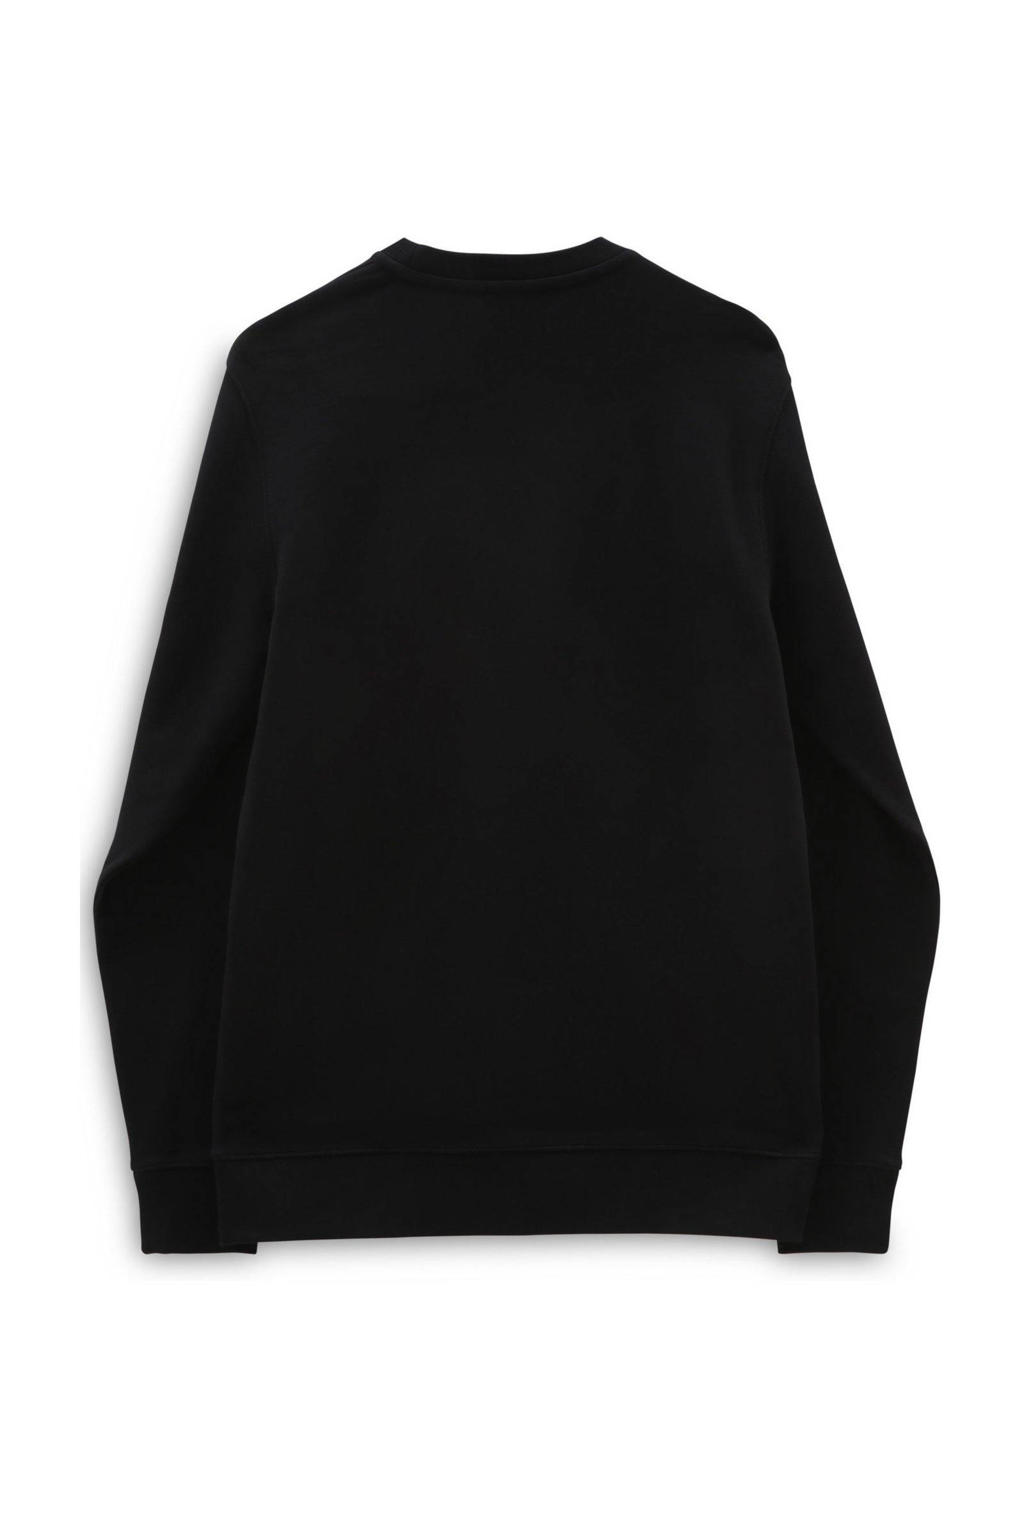 Zwarte heren VANS sweater van katoen met logo dessin, lange mouwen en ronde hals